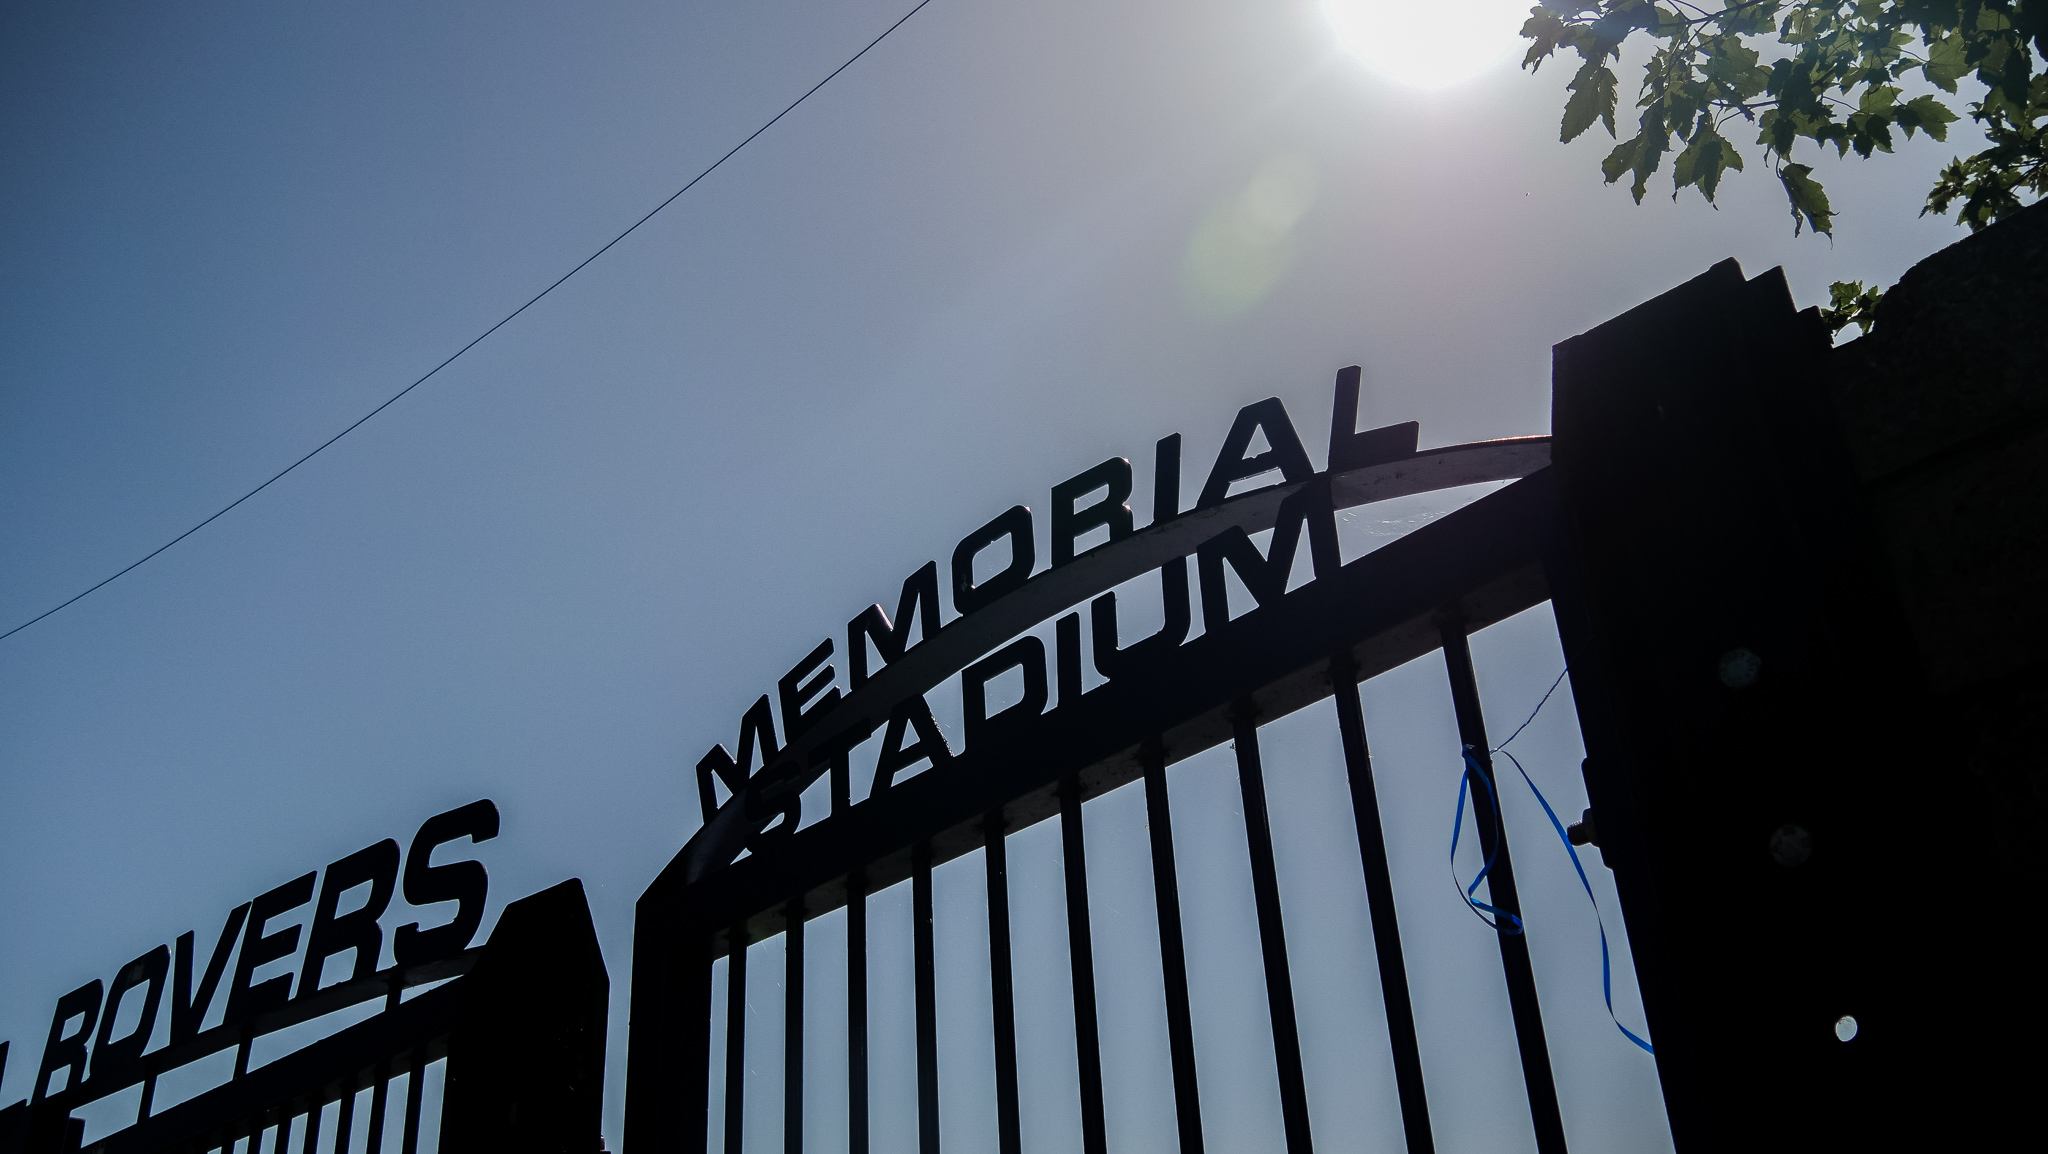 Gates at the Memorial Stadium 